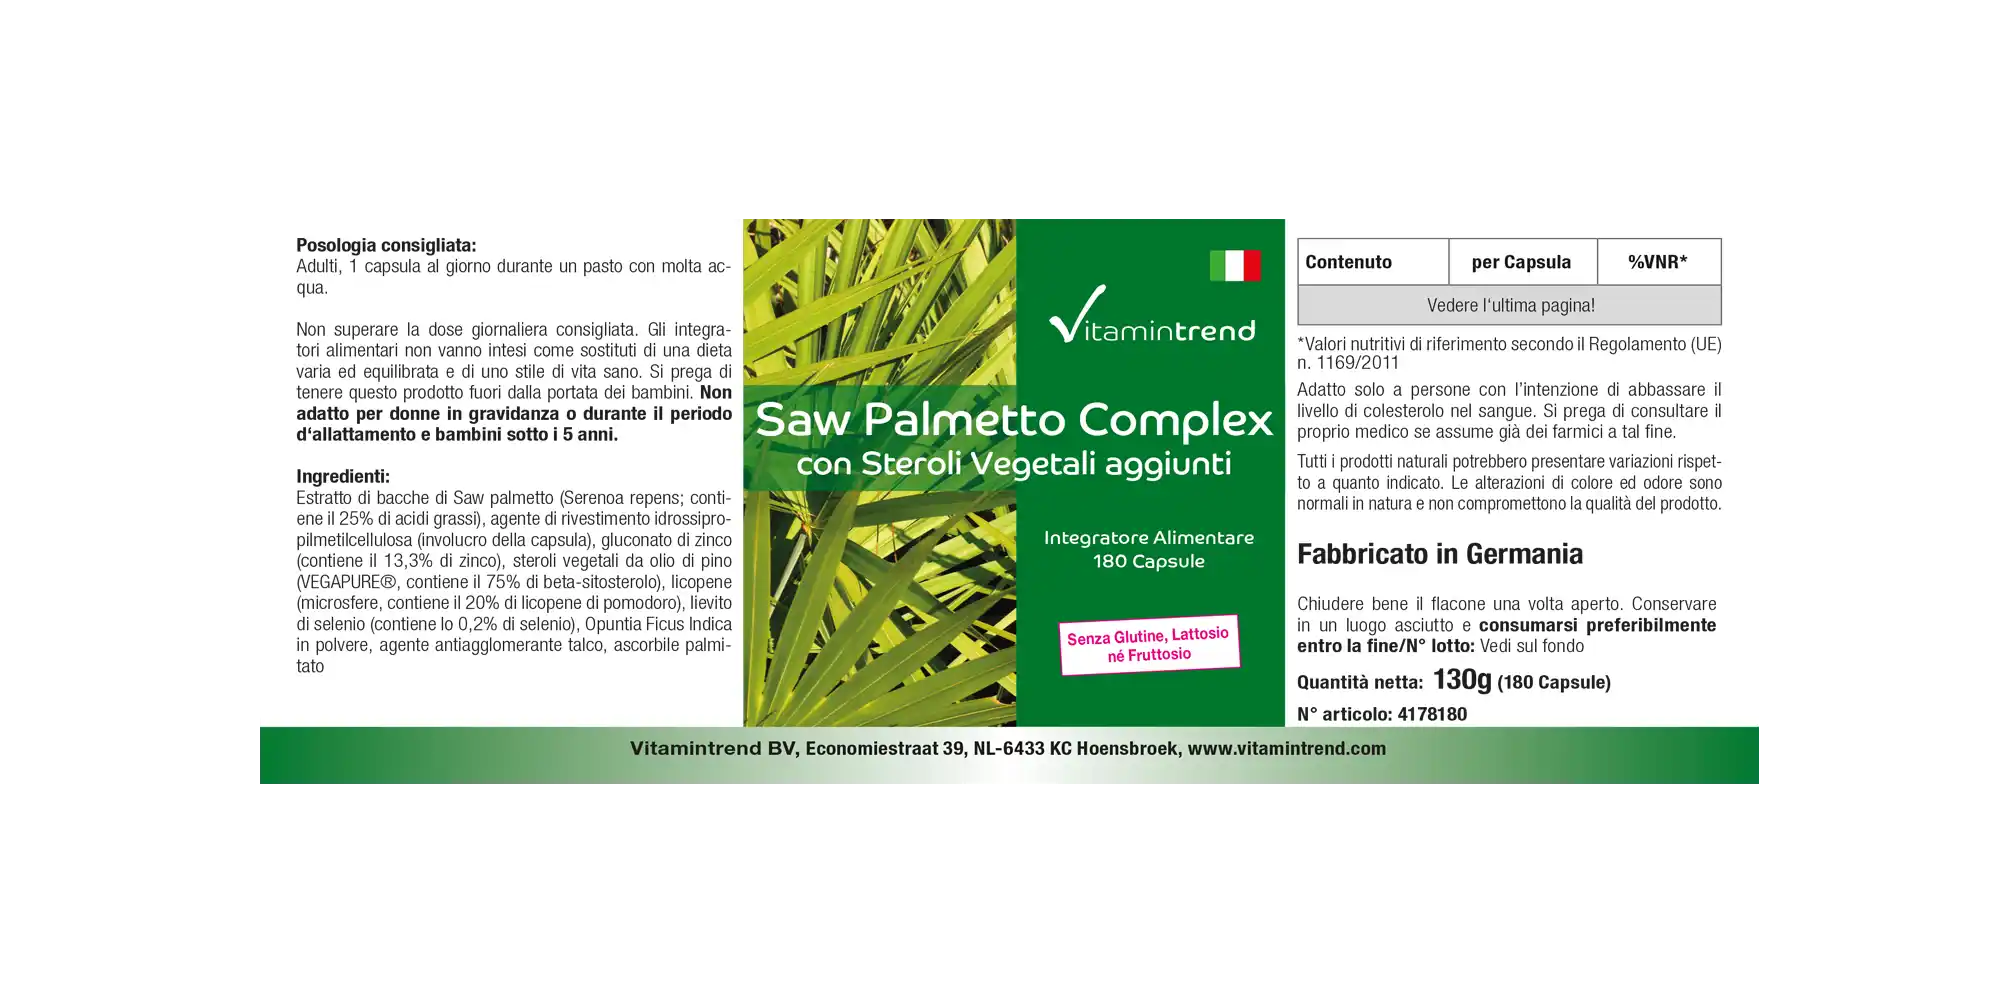 Sägepalme-Komplex - 180 Kapseln mit zugesetzen Pflanzensterolen